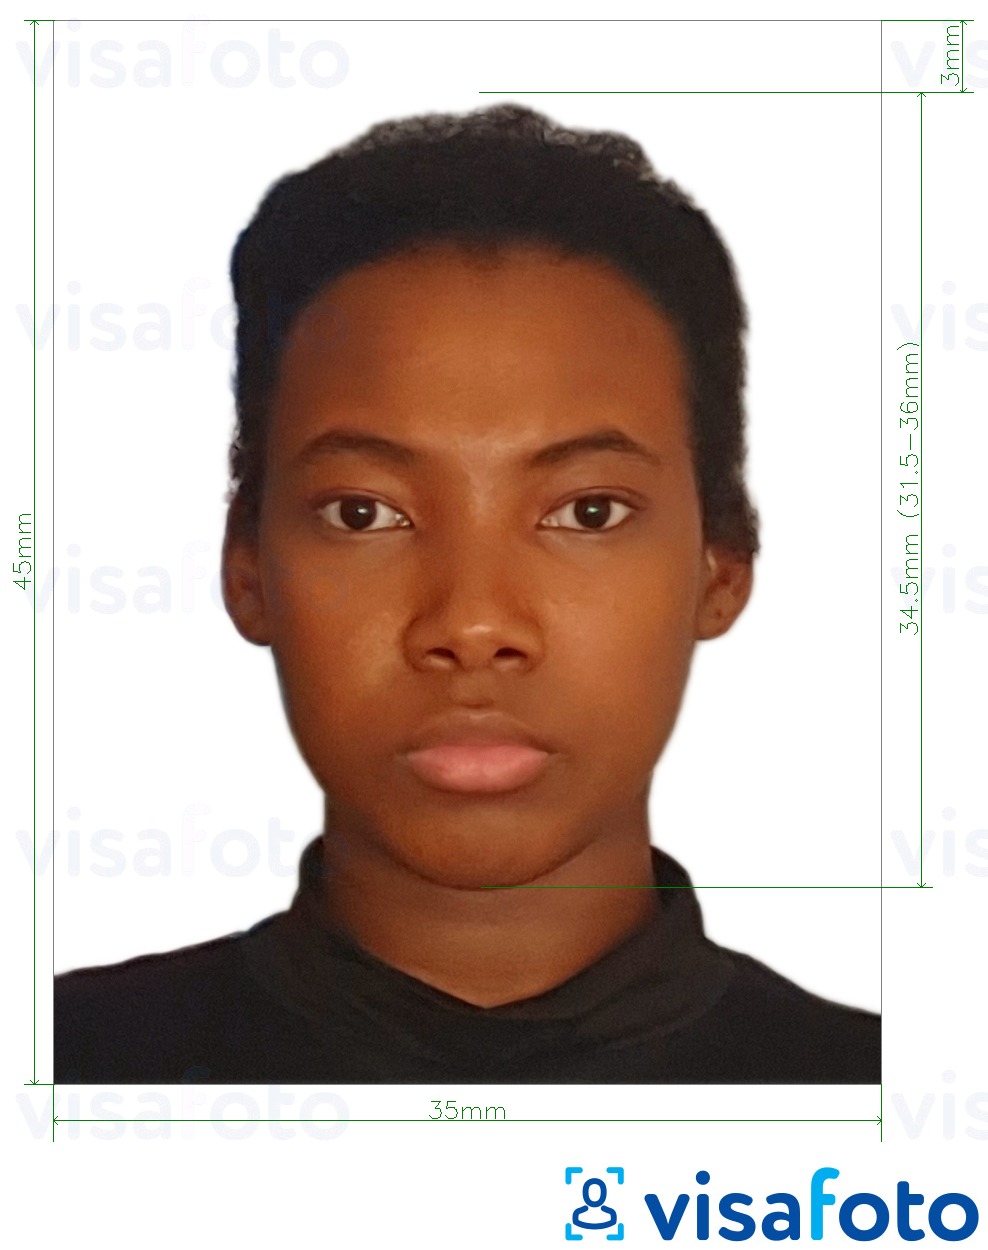 Nuotraukos pavyzdys Benino viza 3,5x4,5 cm (35x45 mm) su tikslaus dydžio specifikacija